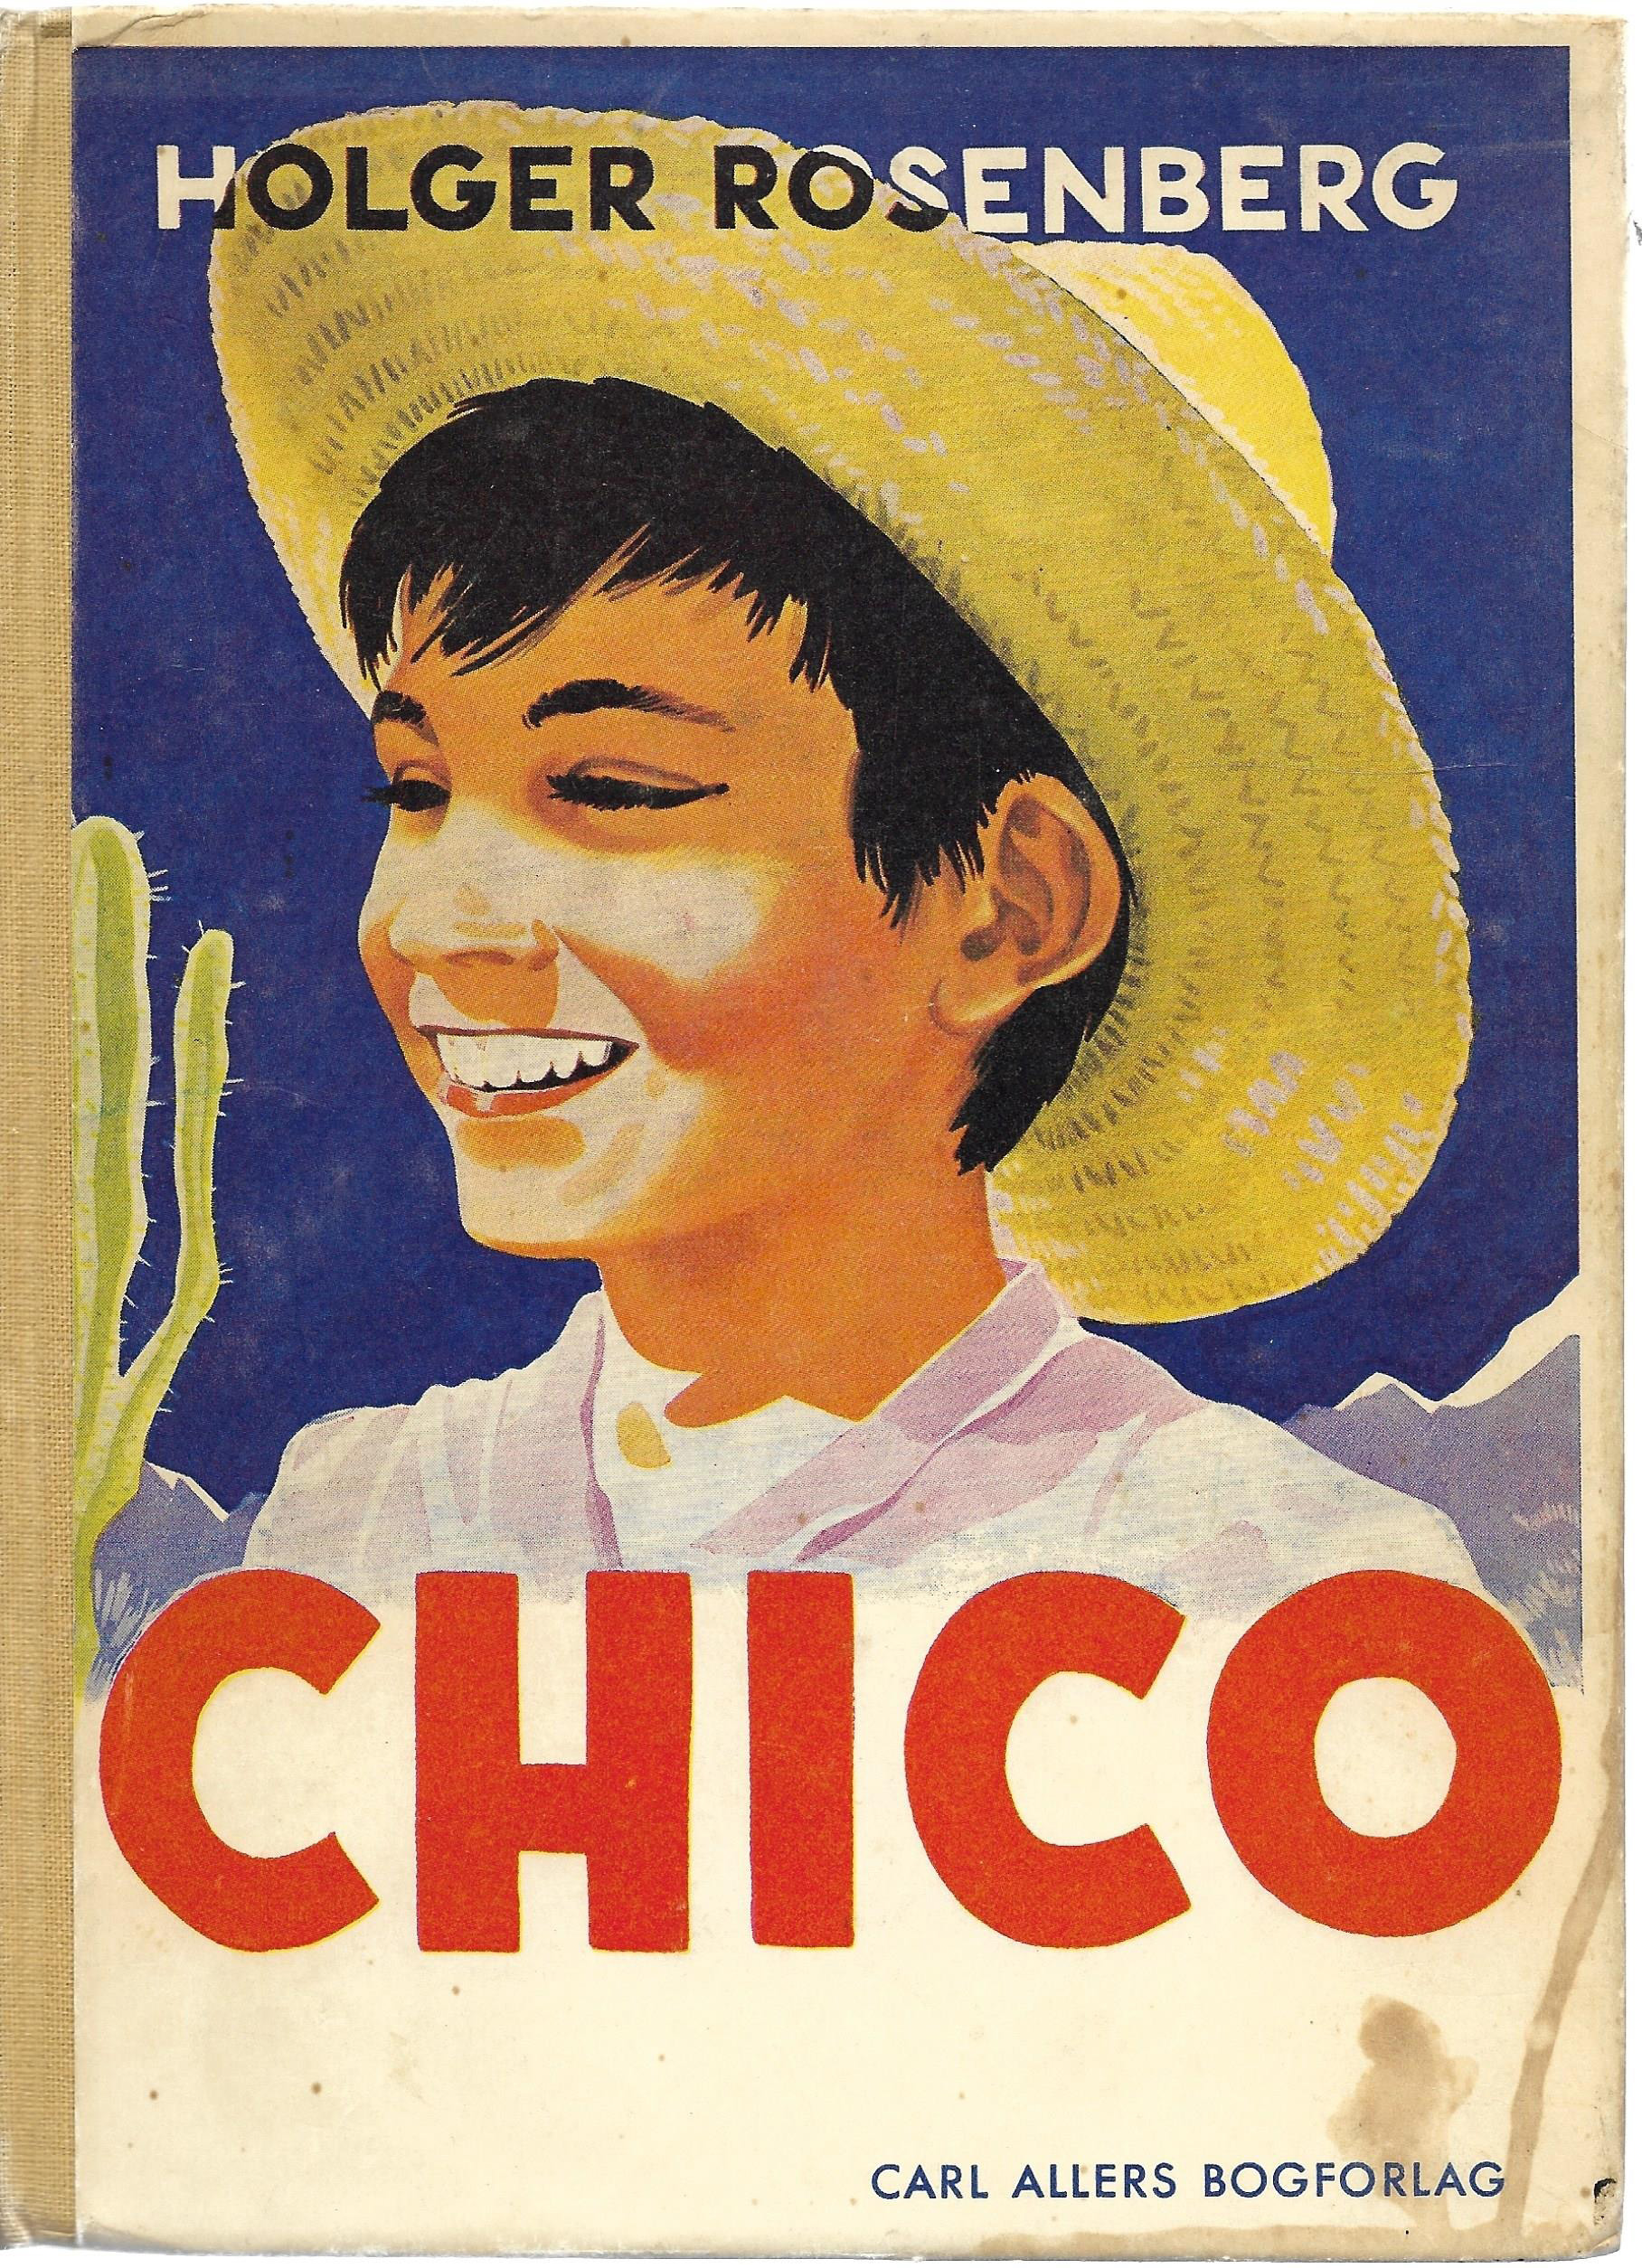 Chico - Holger Rosenberg 1940-1